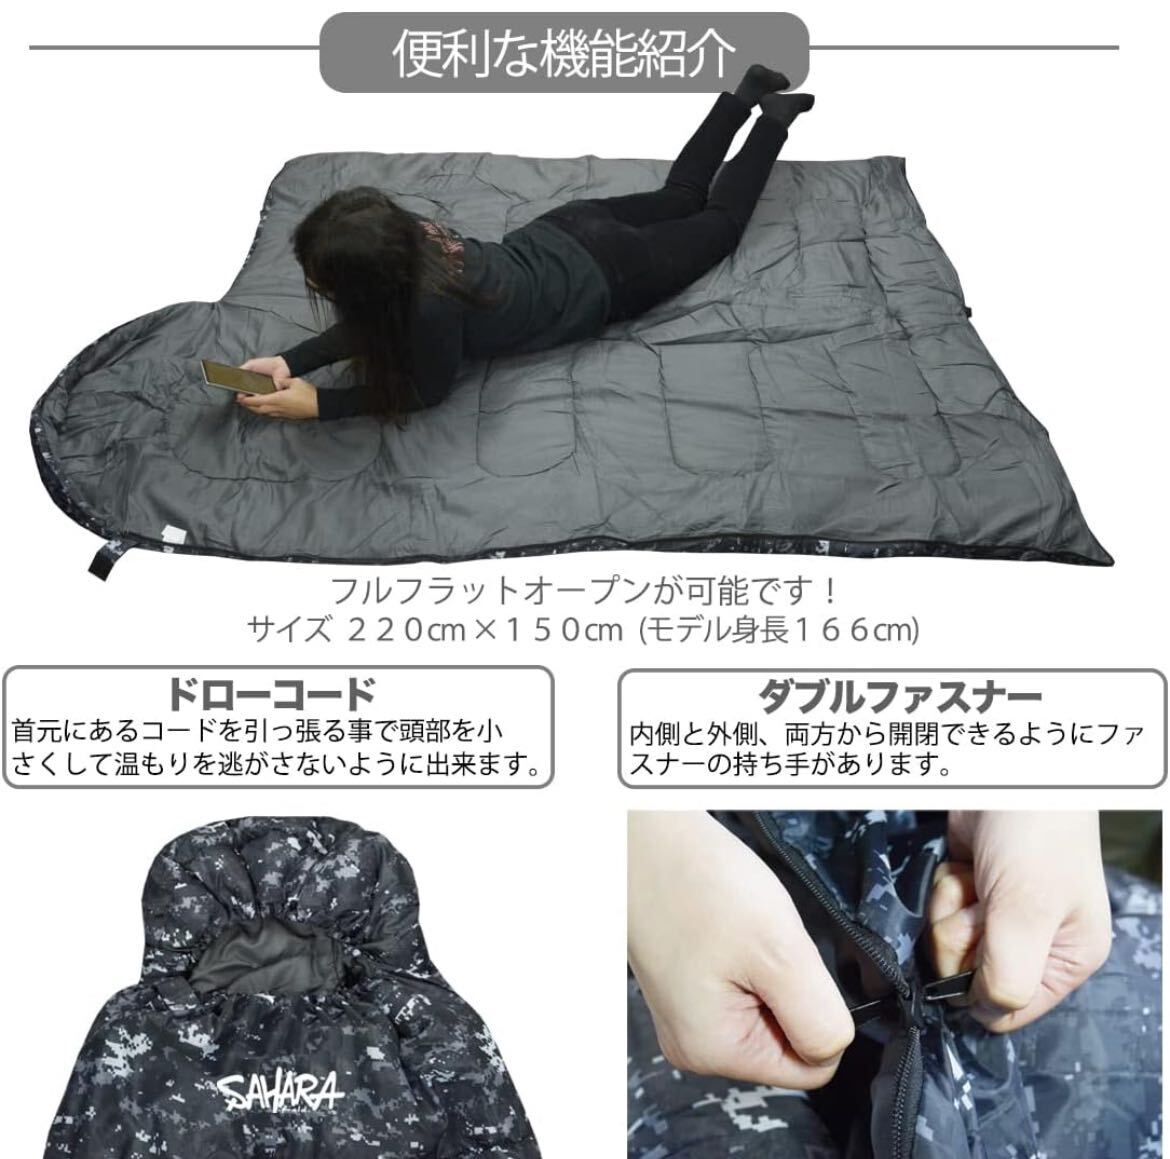 【fieldsahara】 寝袋 シュラフ 封筒型 デジタル迷彩 コンパクト 冬用 夏用 最低使用温度 -15℃デザート 4_画像3